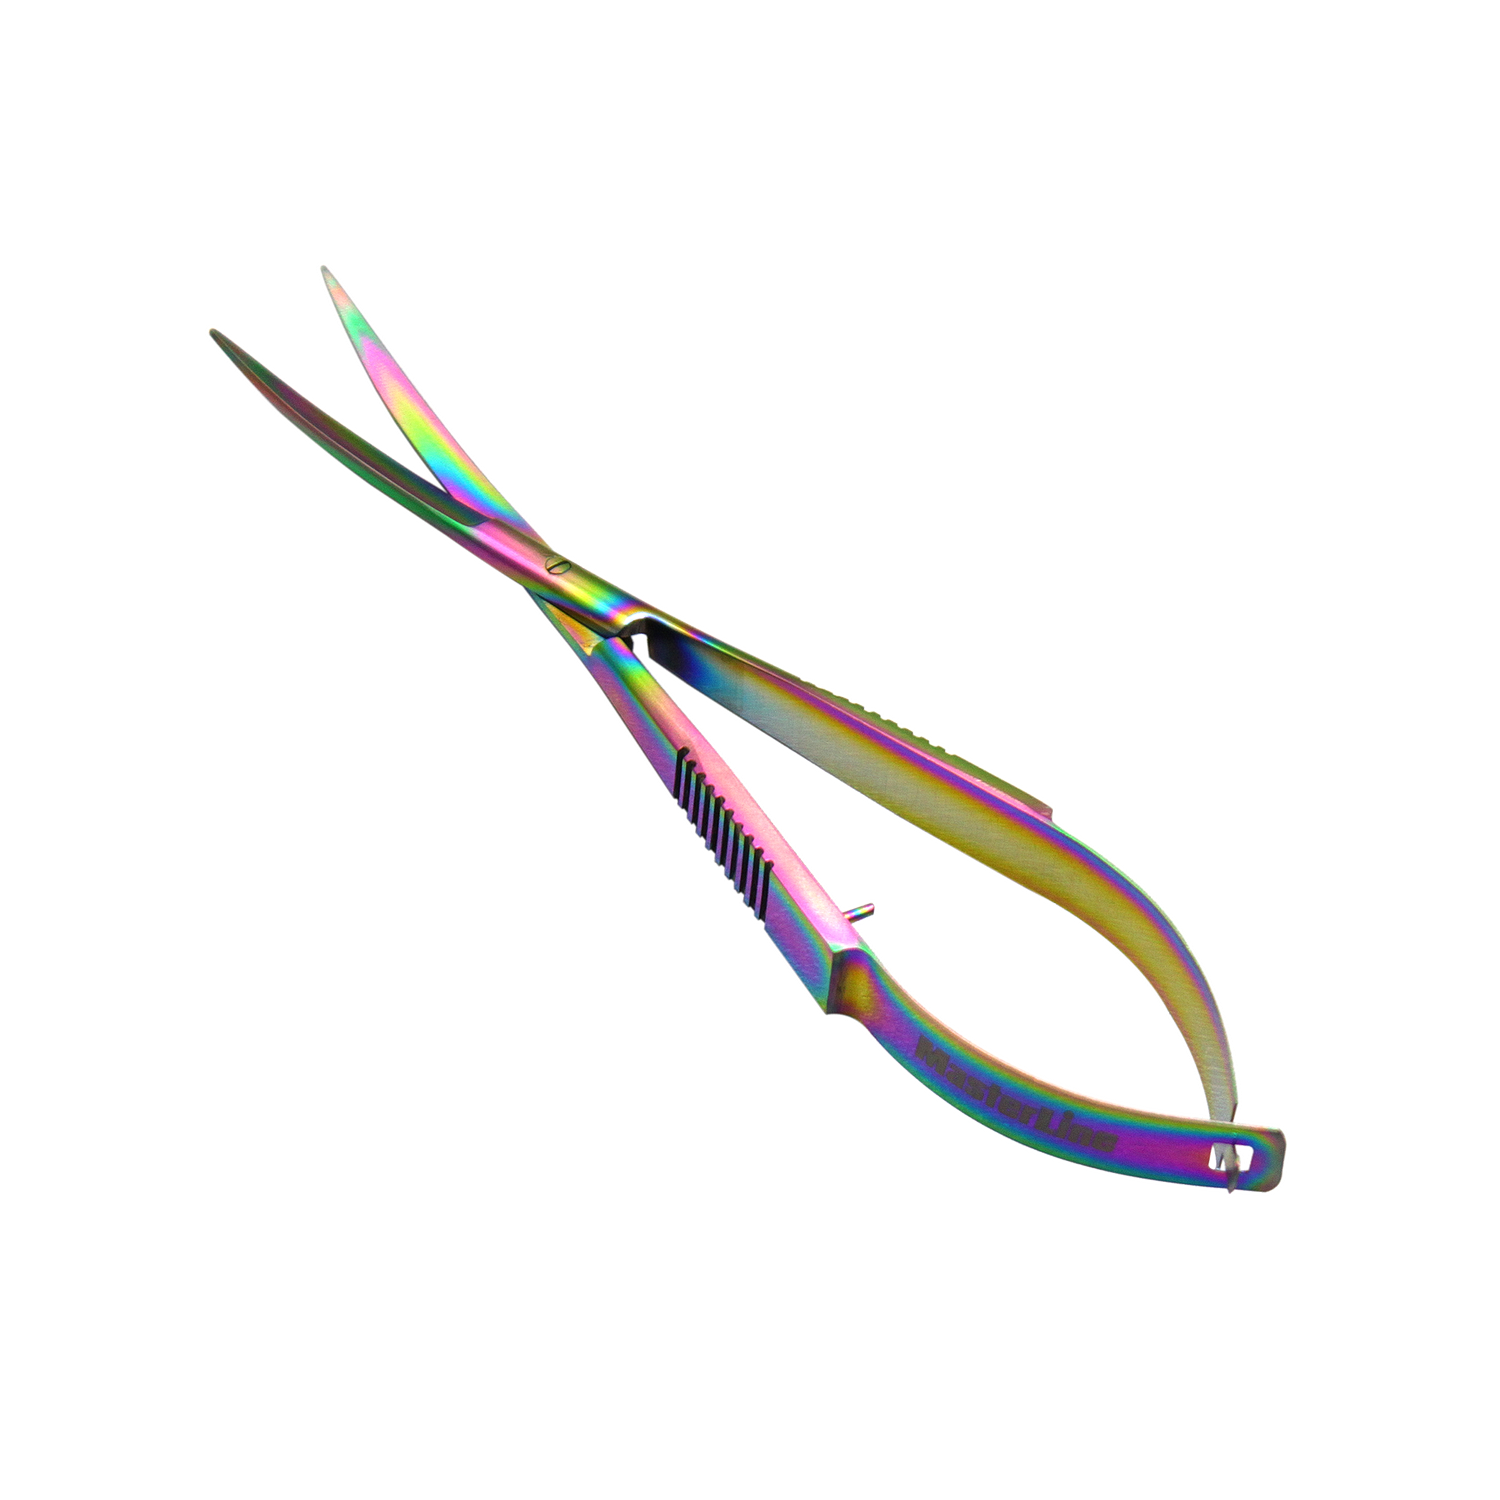 Tropica - Spring Scissors, 15 cm